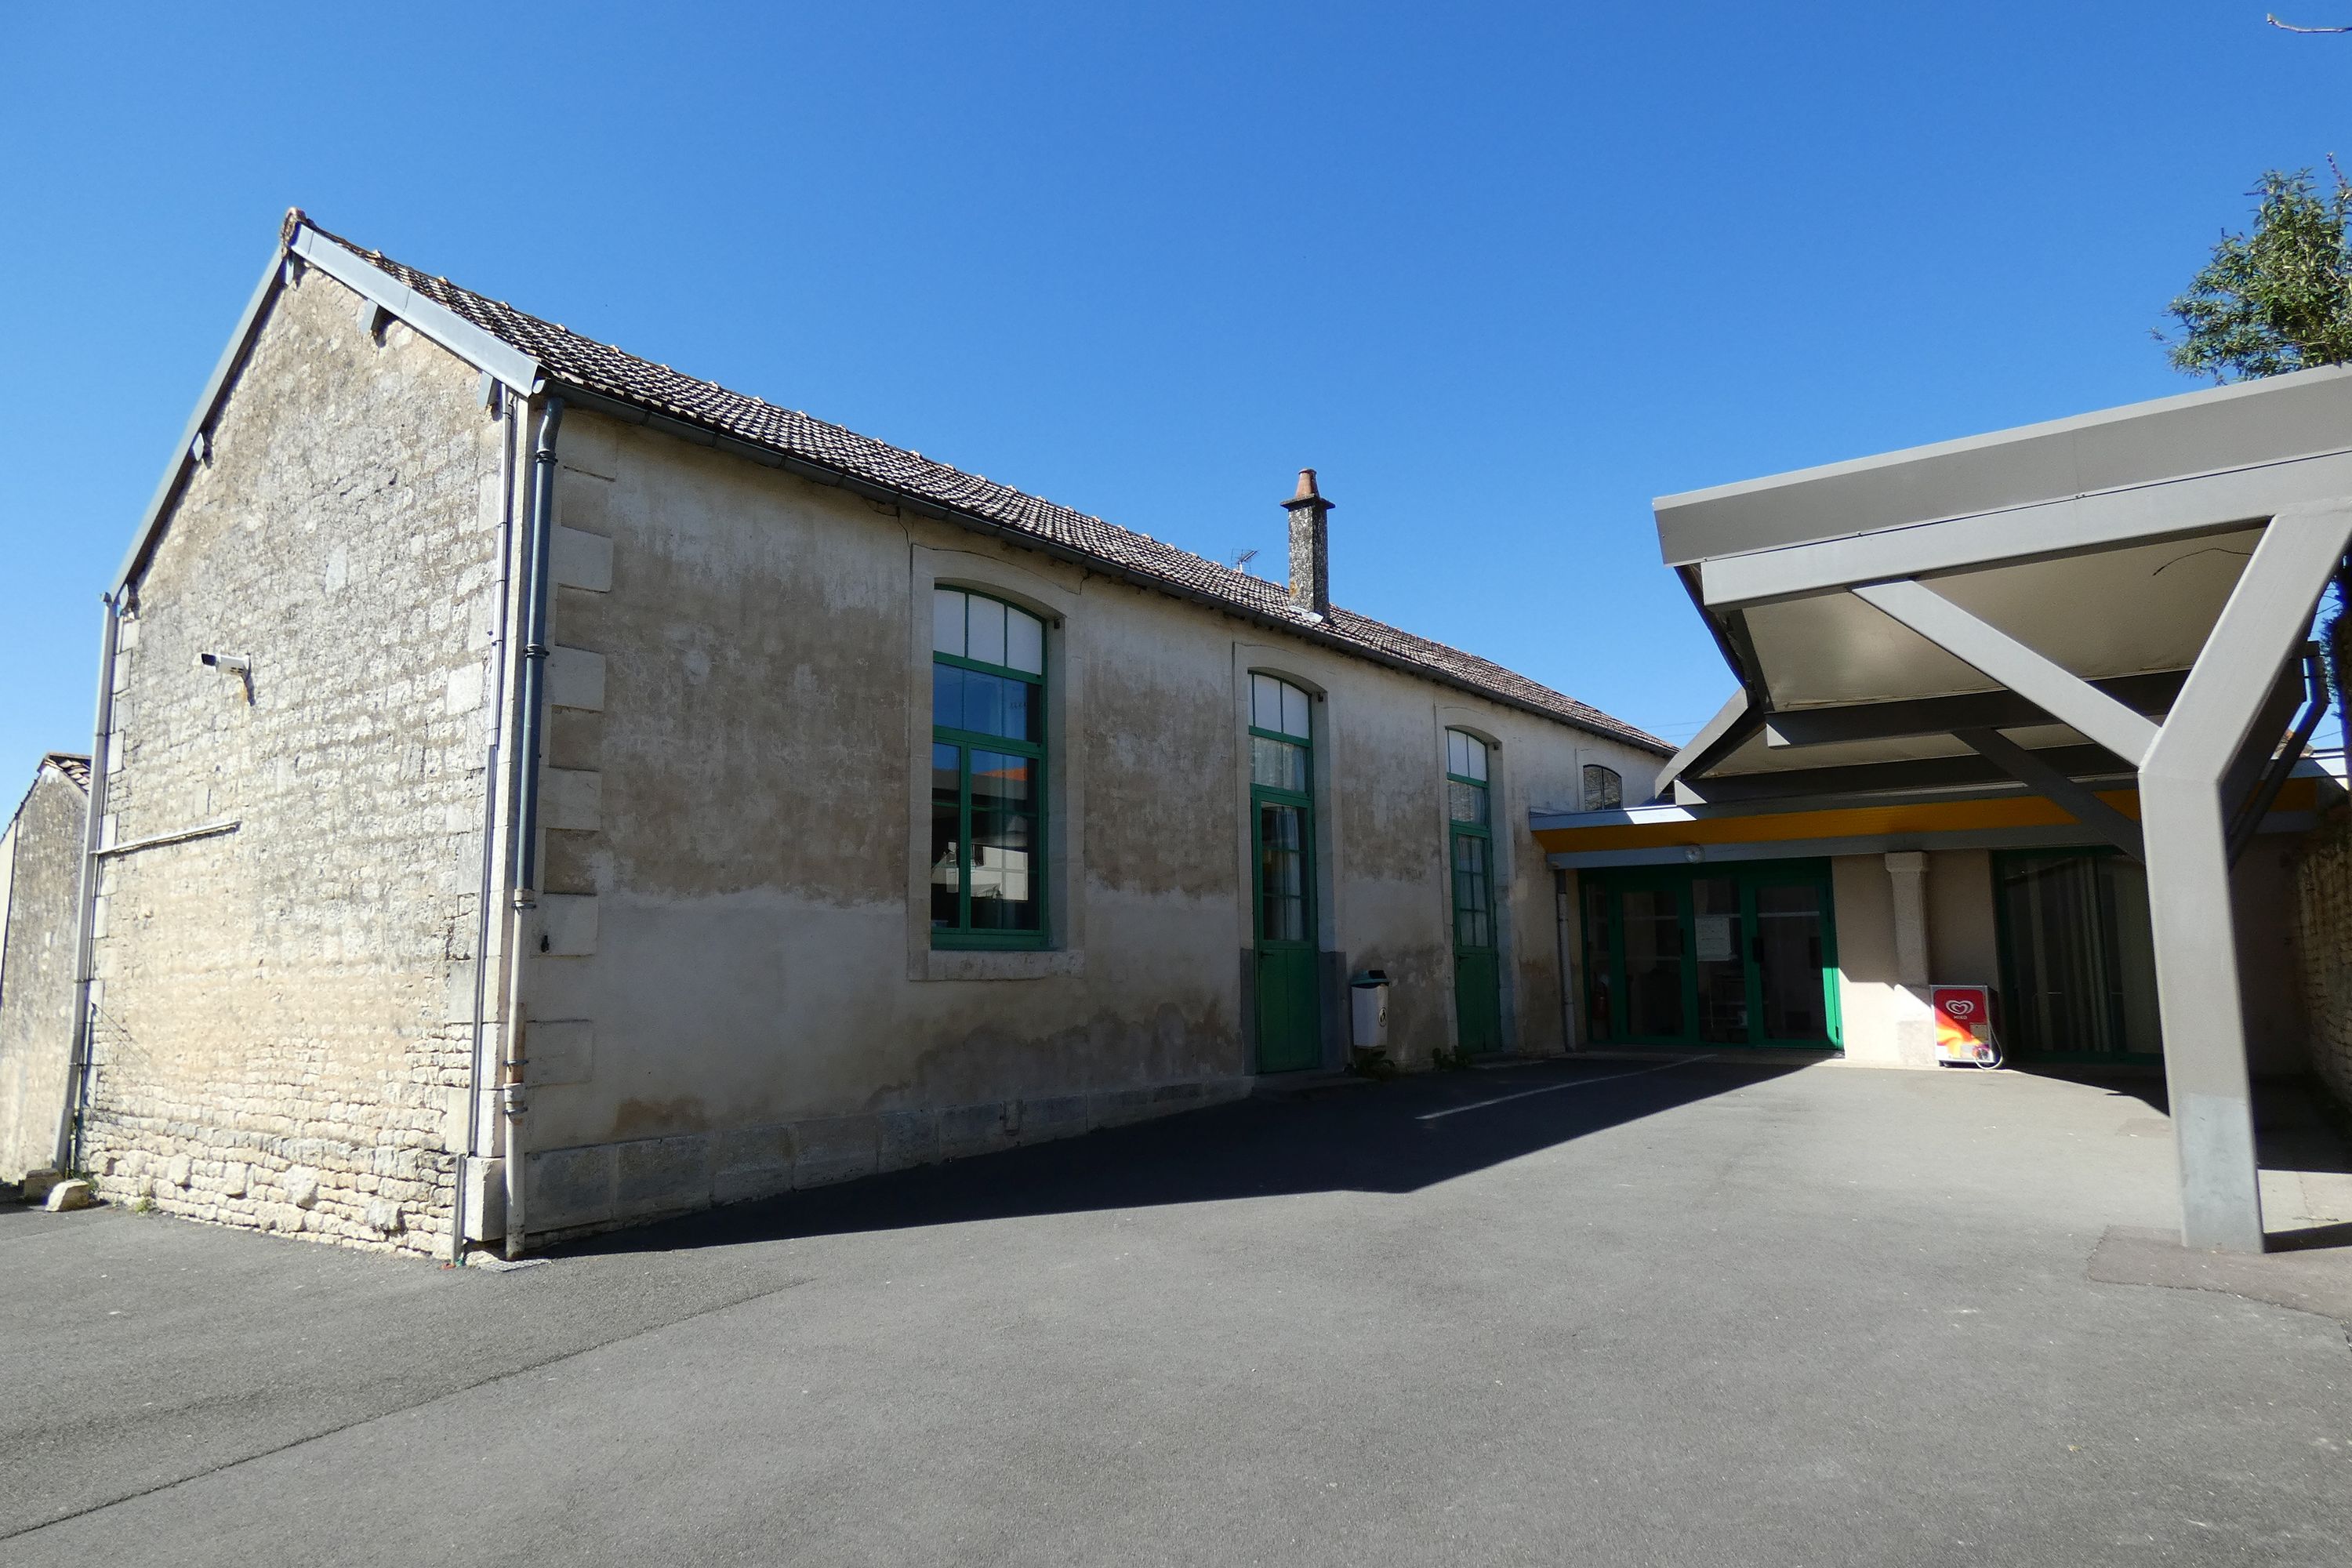 Ecole maternelle privée dite l'asile Sainte-Anne, actuellement maison et annexe du collège Saint-Martin, 10 rue de la Cure